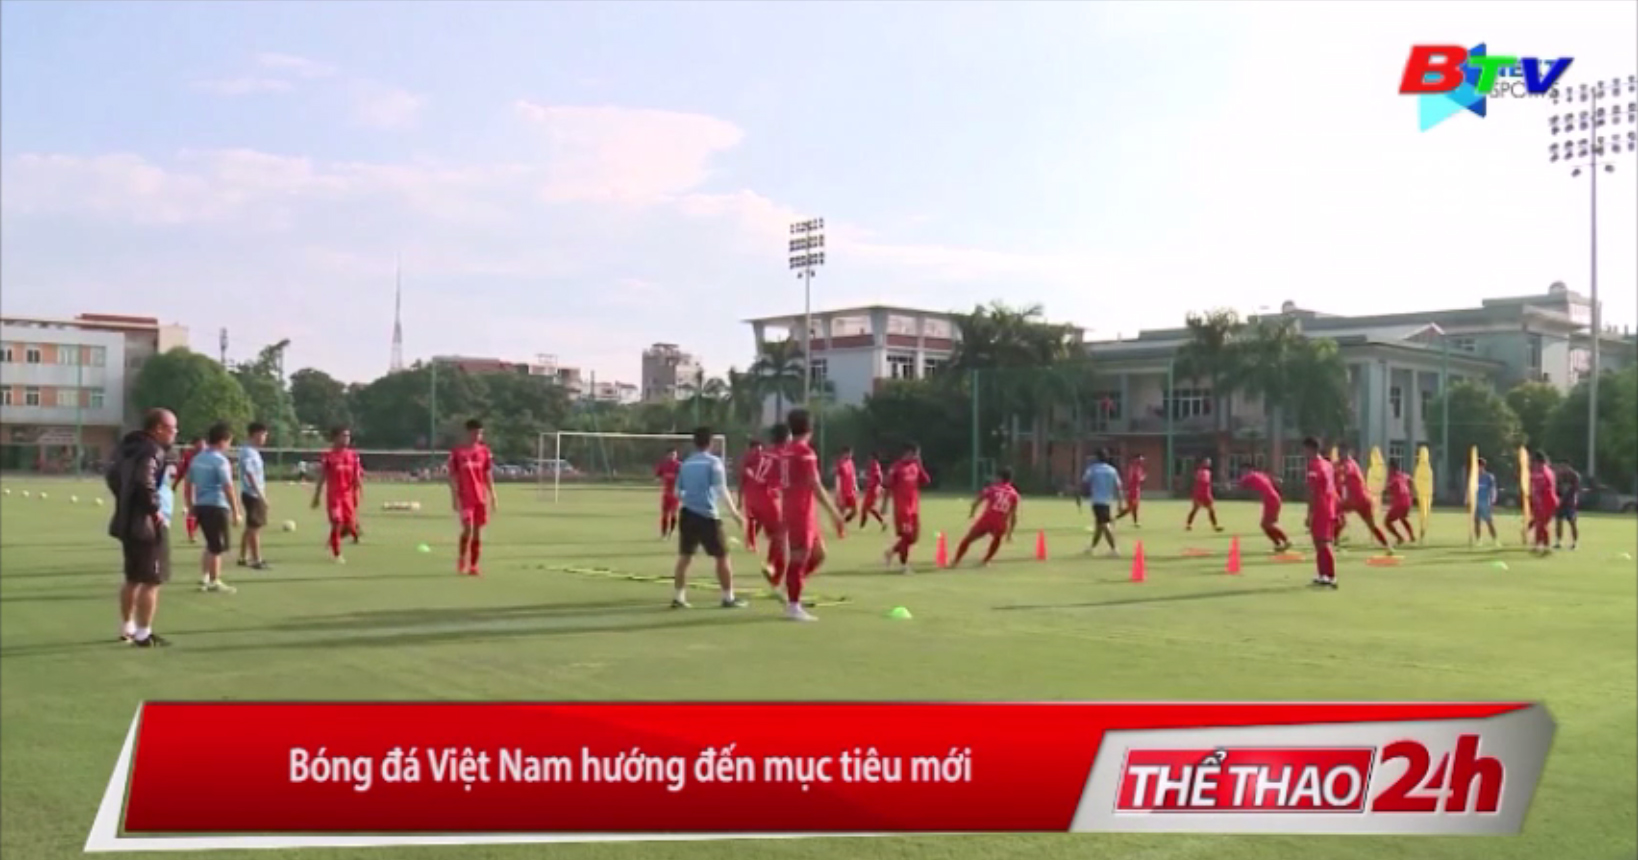 Bóng đá Việt Nam hướng đến mục tiêu mới